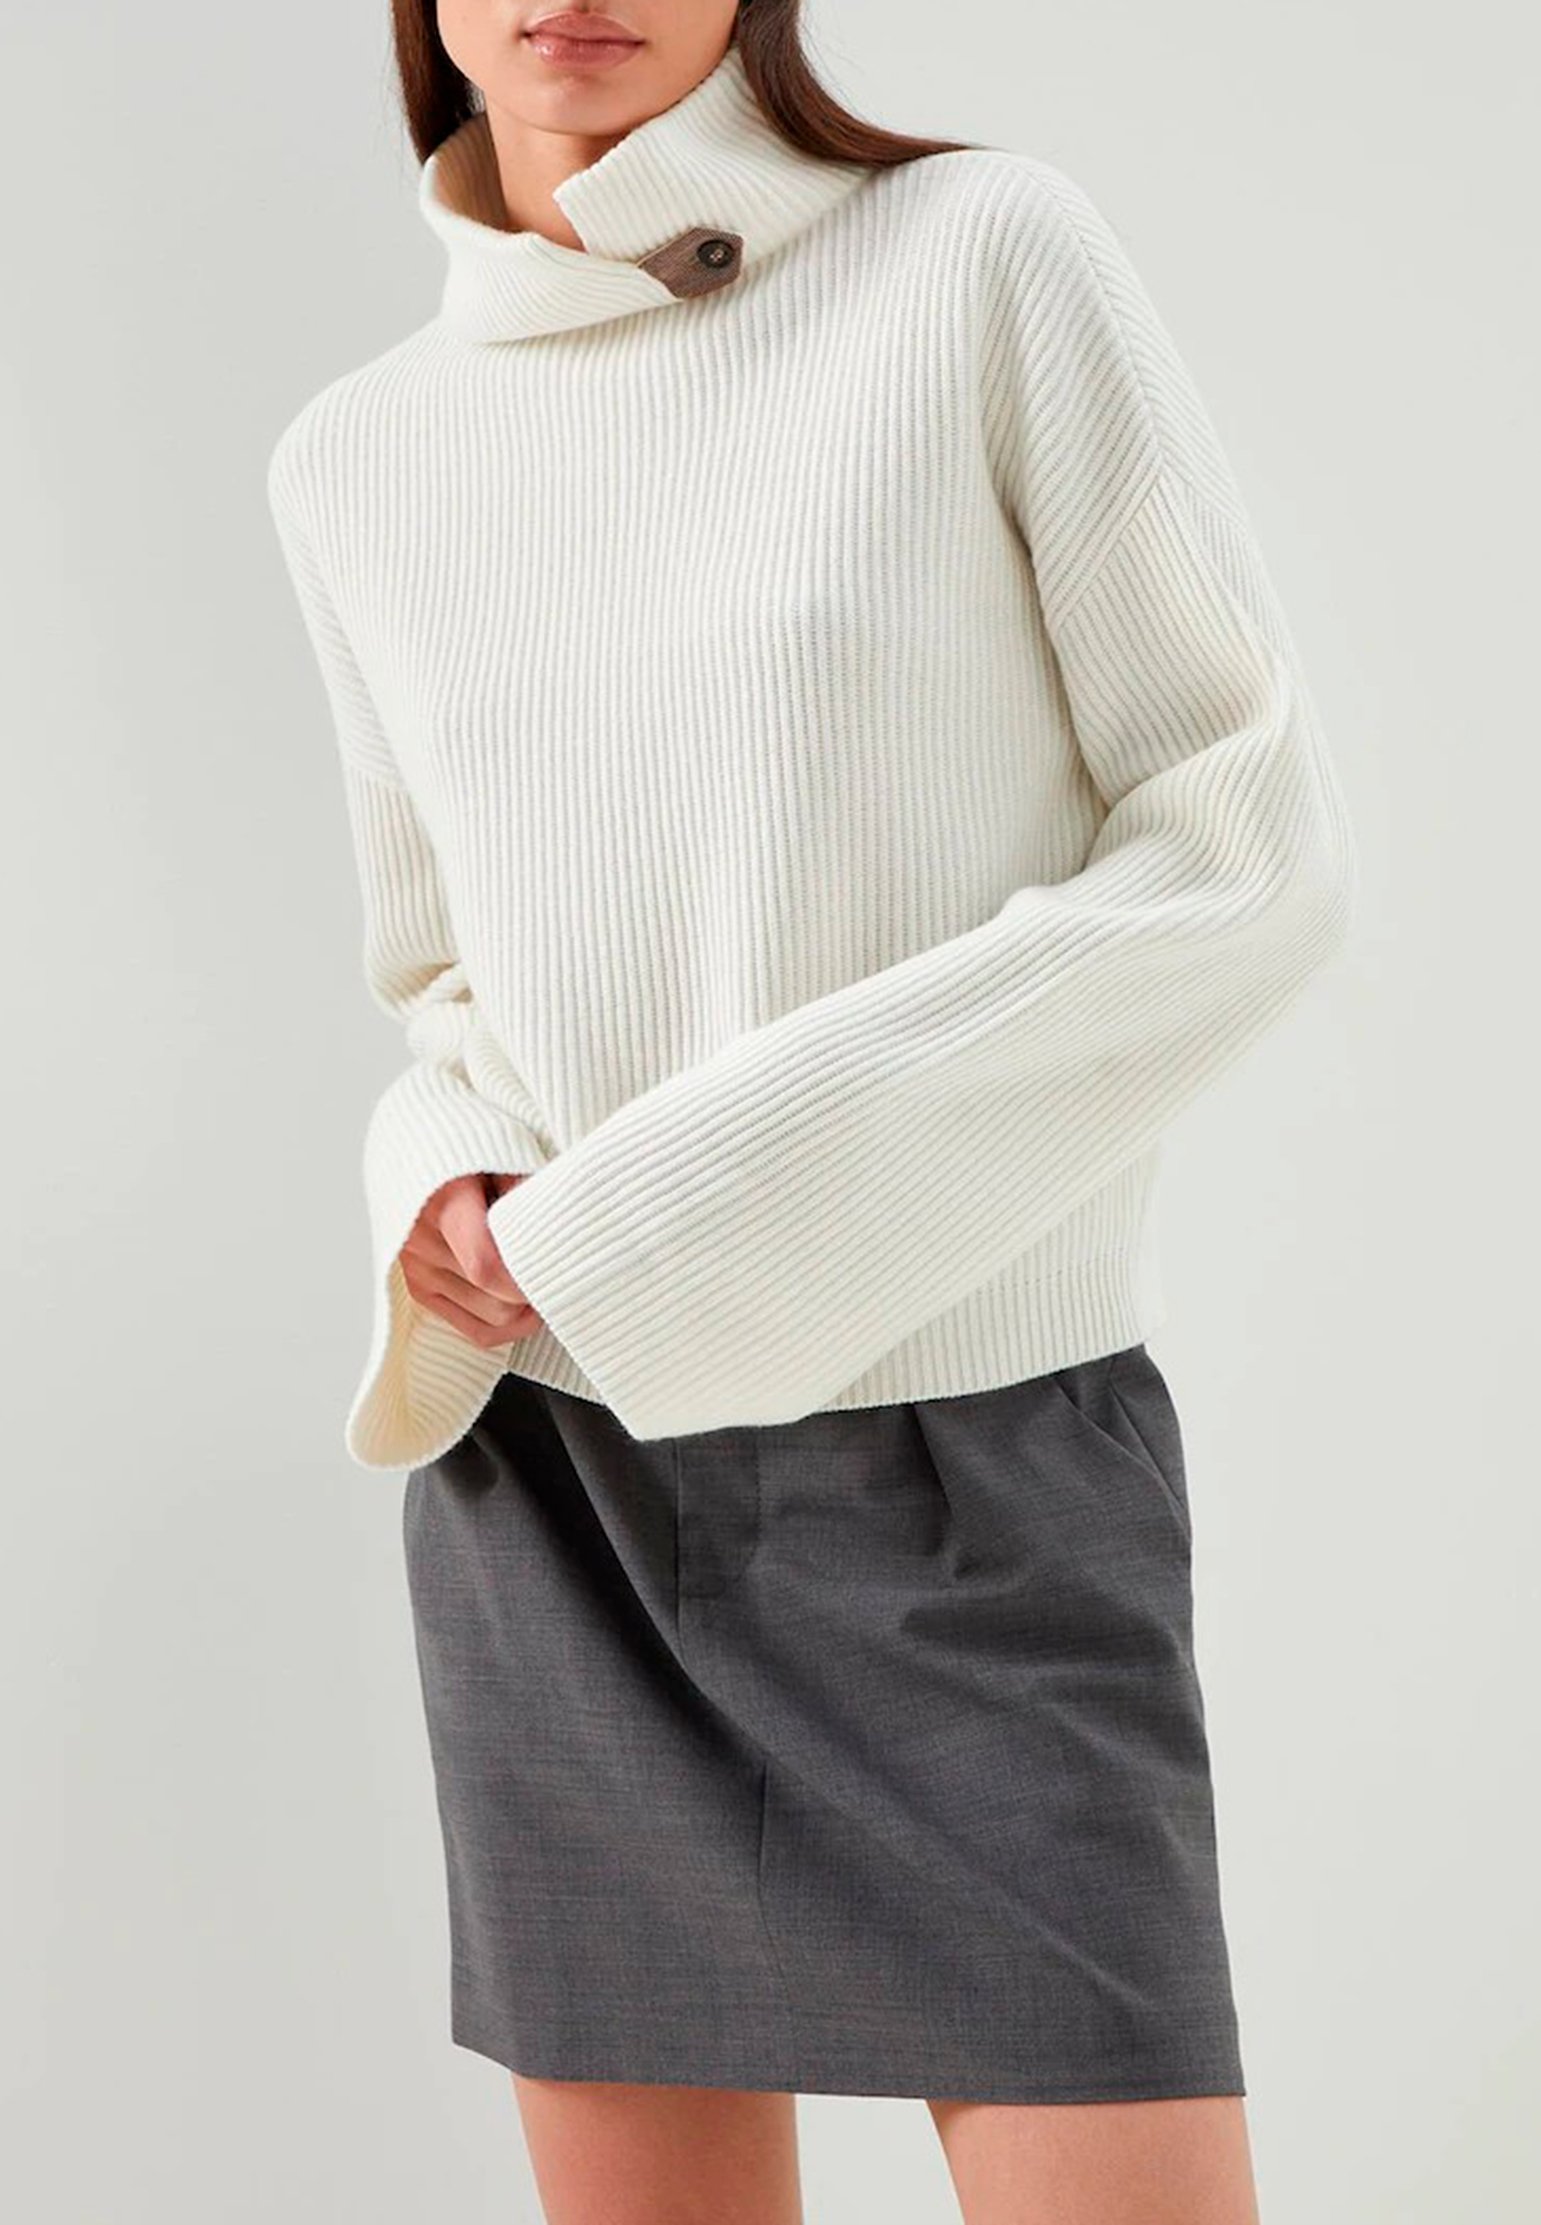 Sweater BRUNELLO CUCINELLI Color: white (Code: 486) in online store Allure